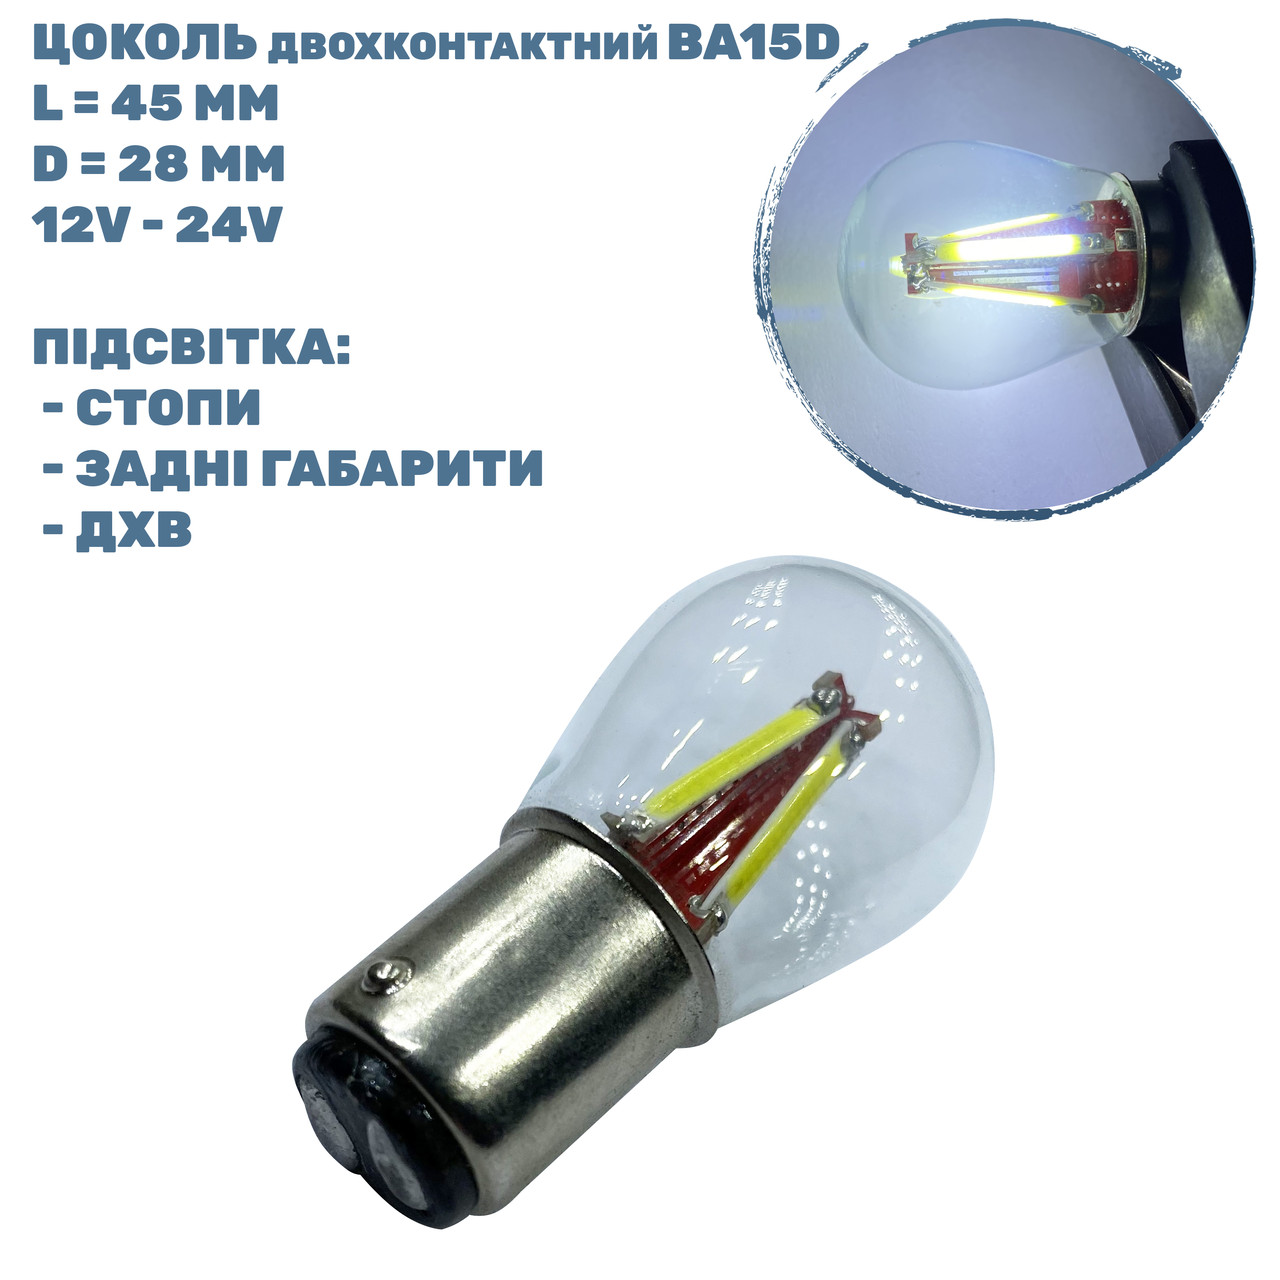 Лампа LED цоколь двохконтактний BA15D; 2.2W; 12-24V; 3 діода;D-28 mm; L-45 mm (T25-B15D-003WCOB BA15D) (уп. 50